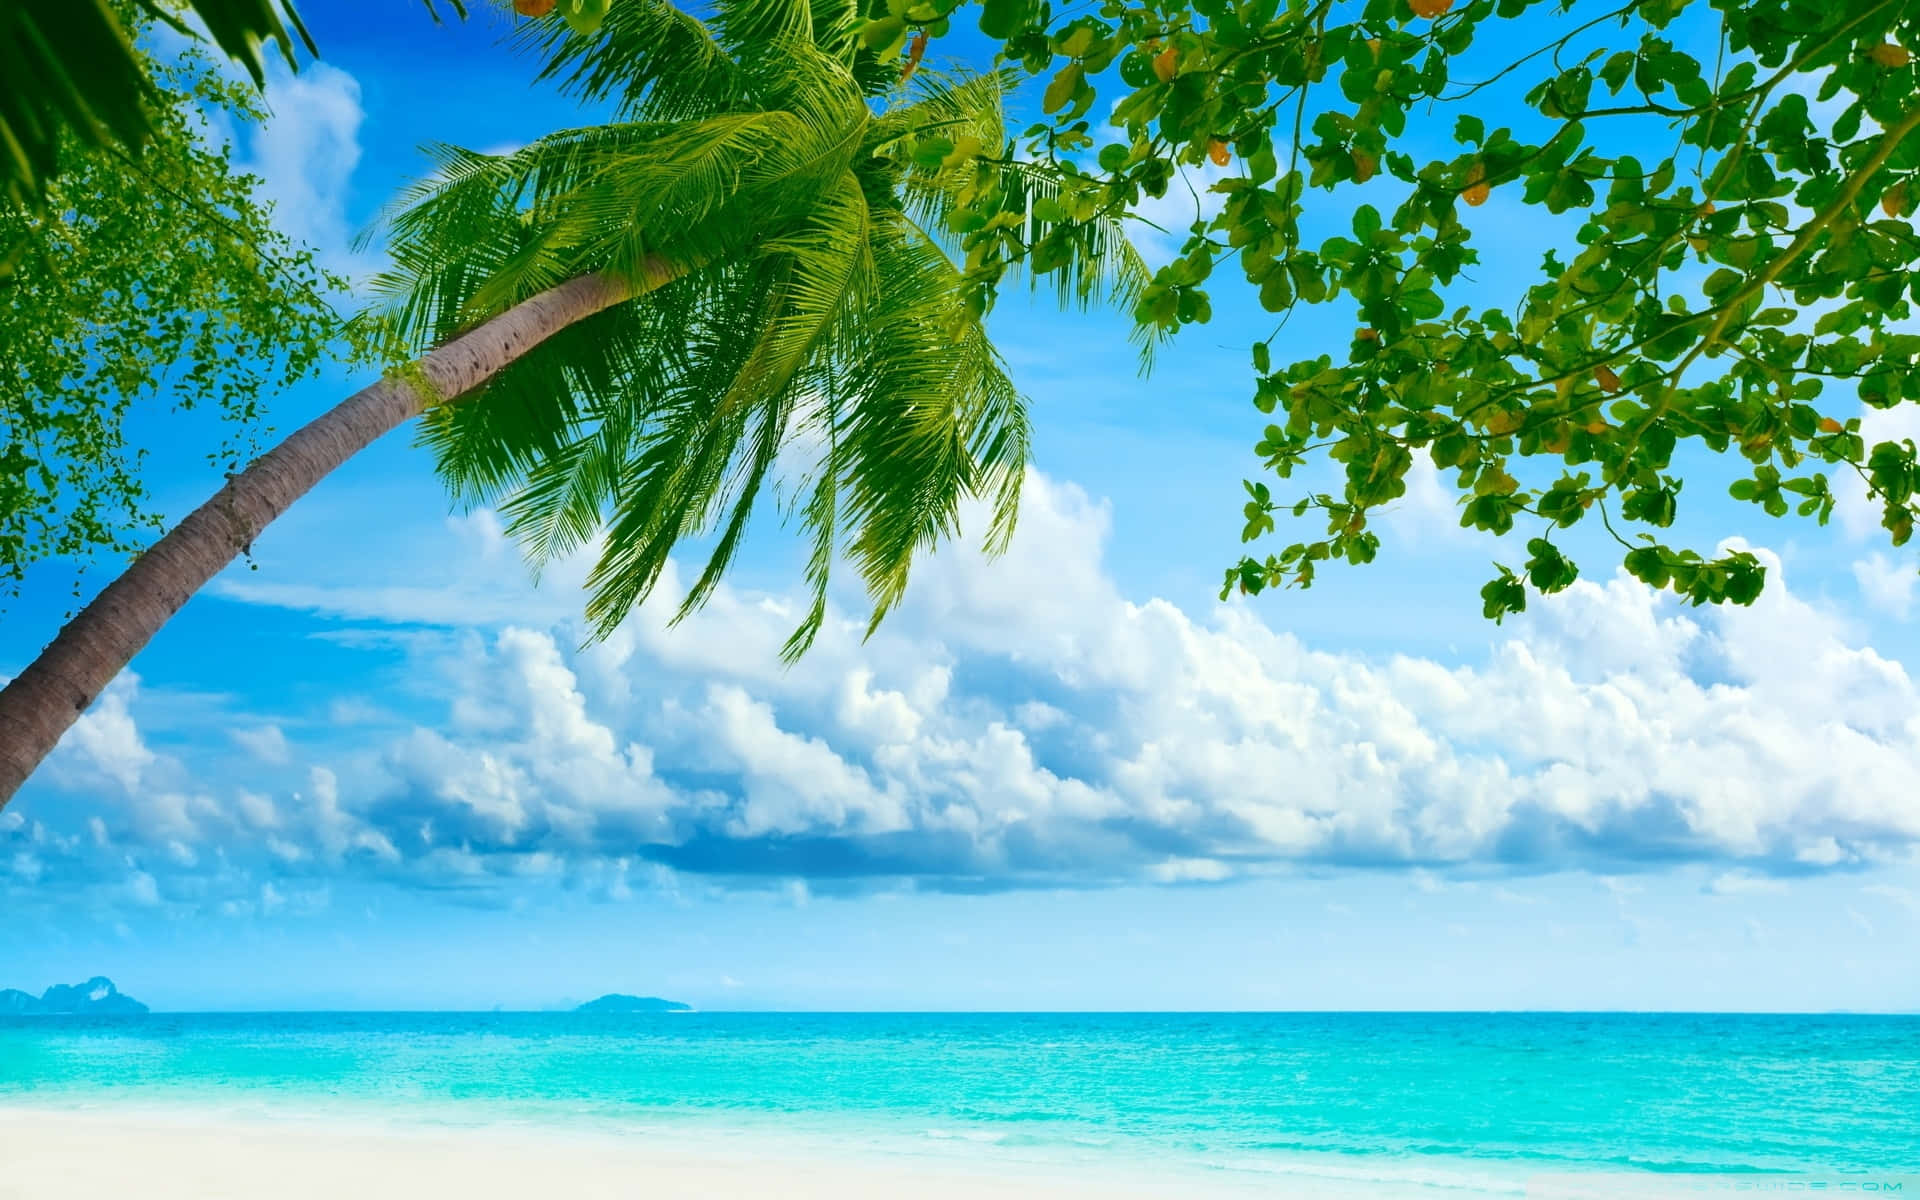 En enkel og smuk tropisk strandscene med strandhytter, palmetræer og krystalklart blåt vand. Wallpaper